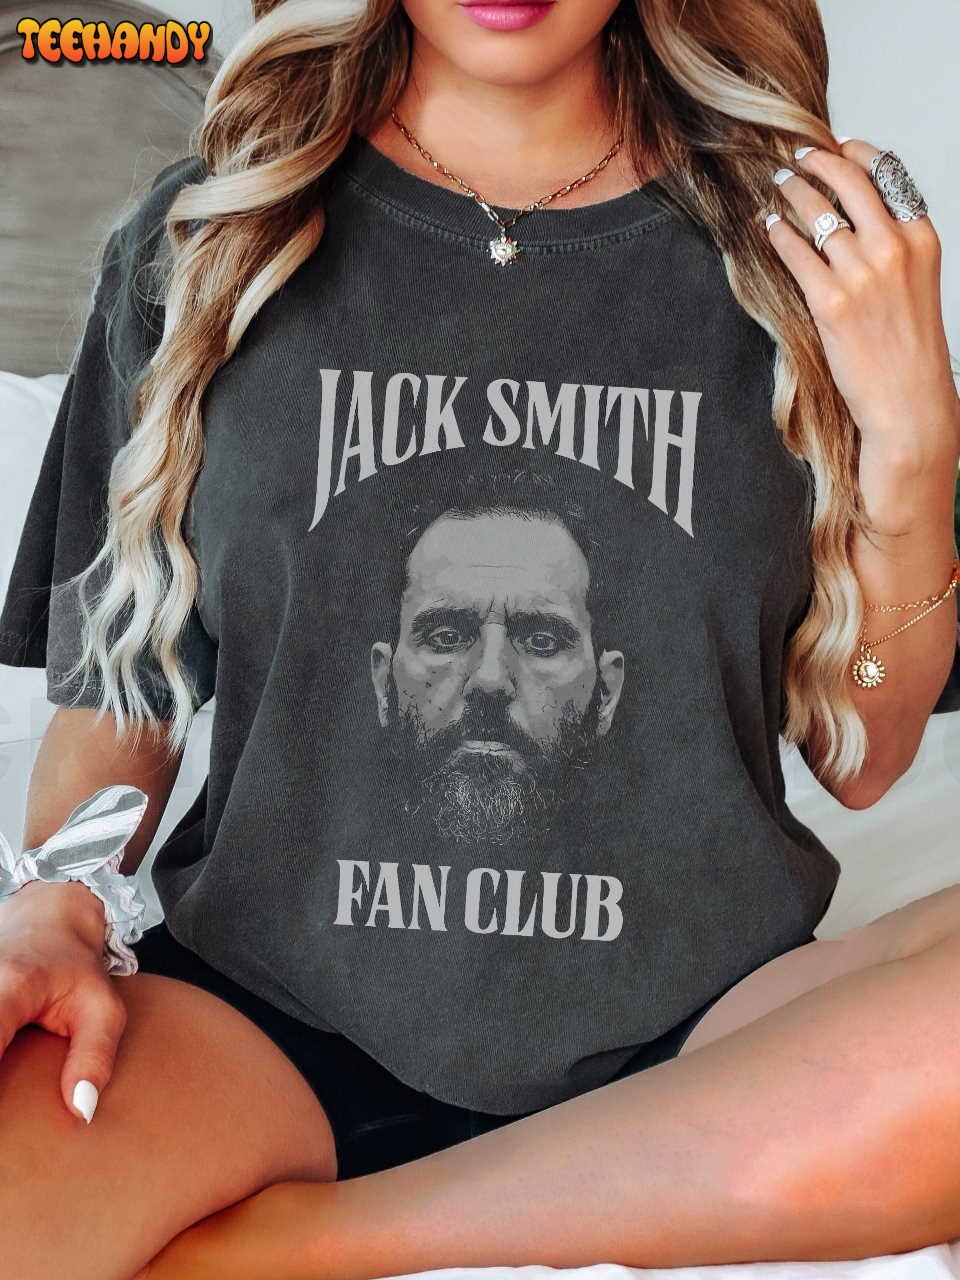 Jack Smith Shirt, Jack Smith Fan Club Shirt